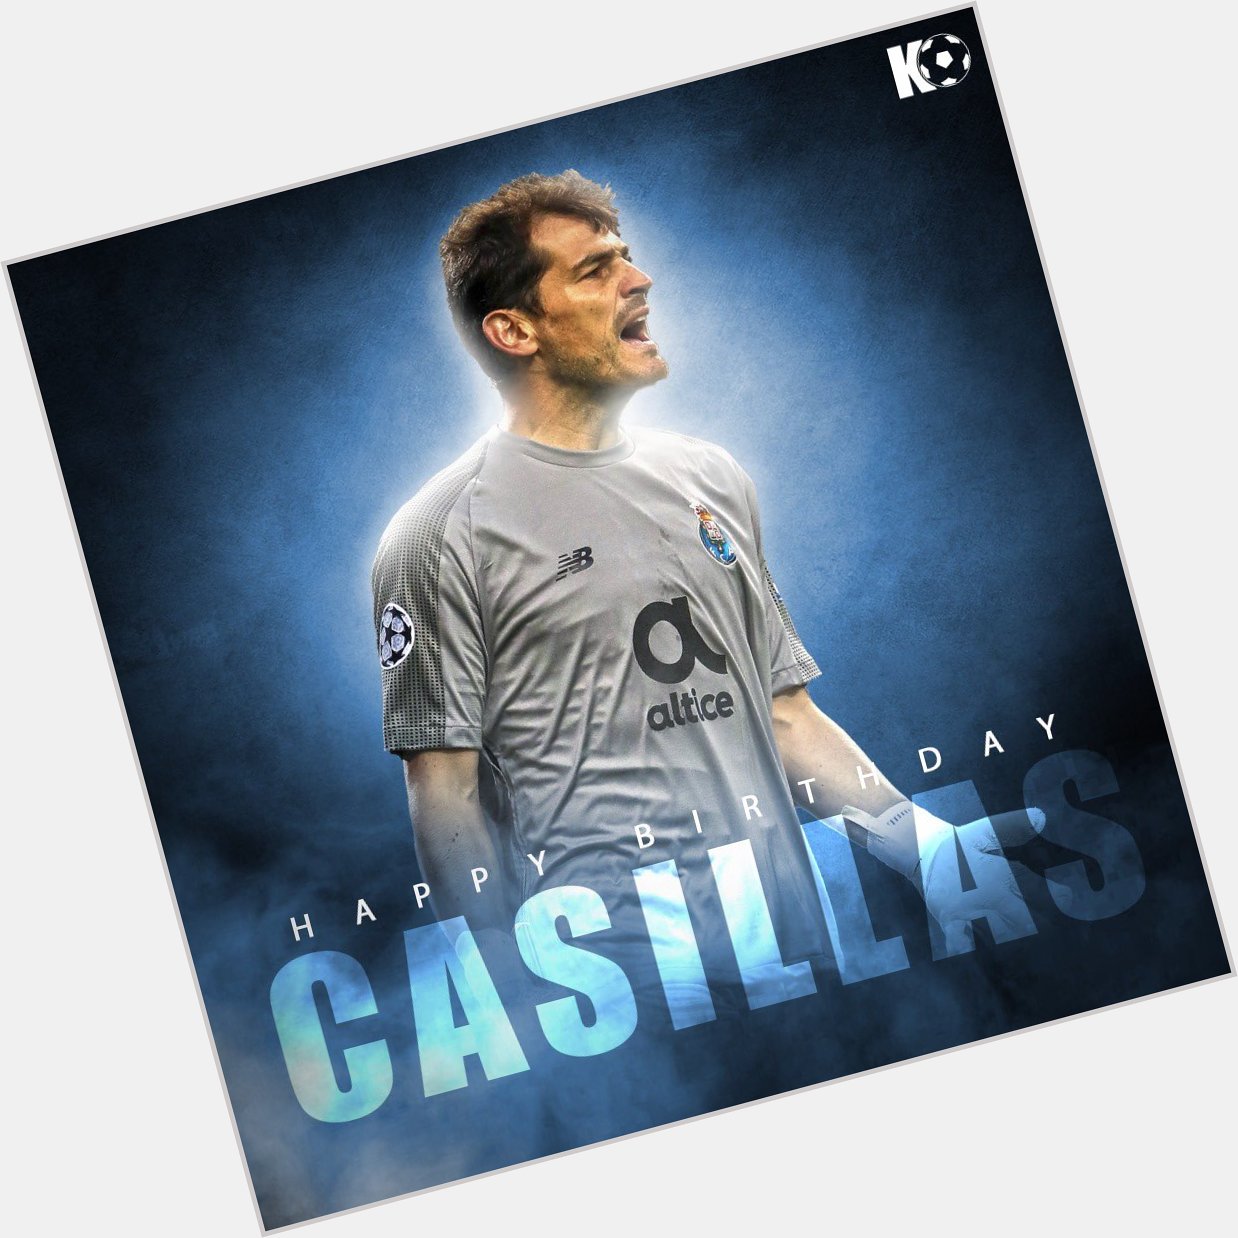 Join in wishing Iker Casillas a Happy Birthday! 